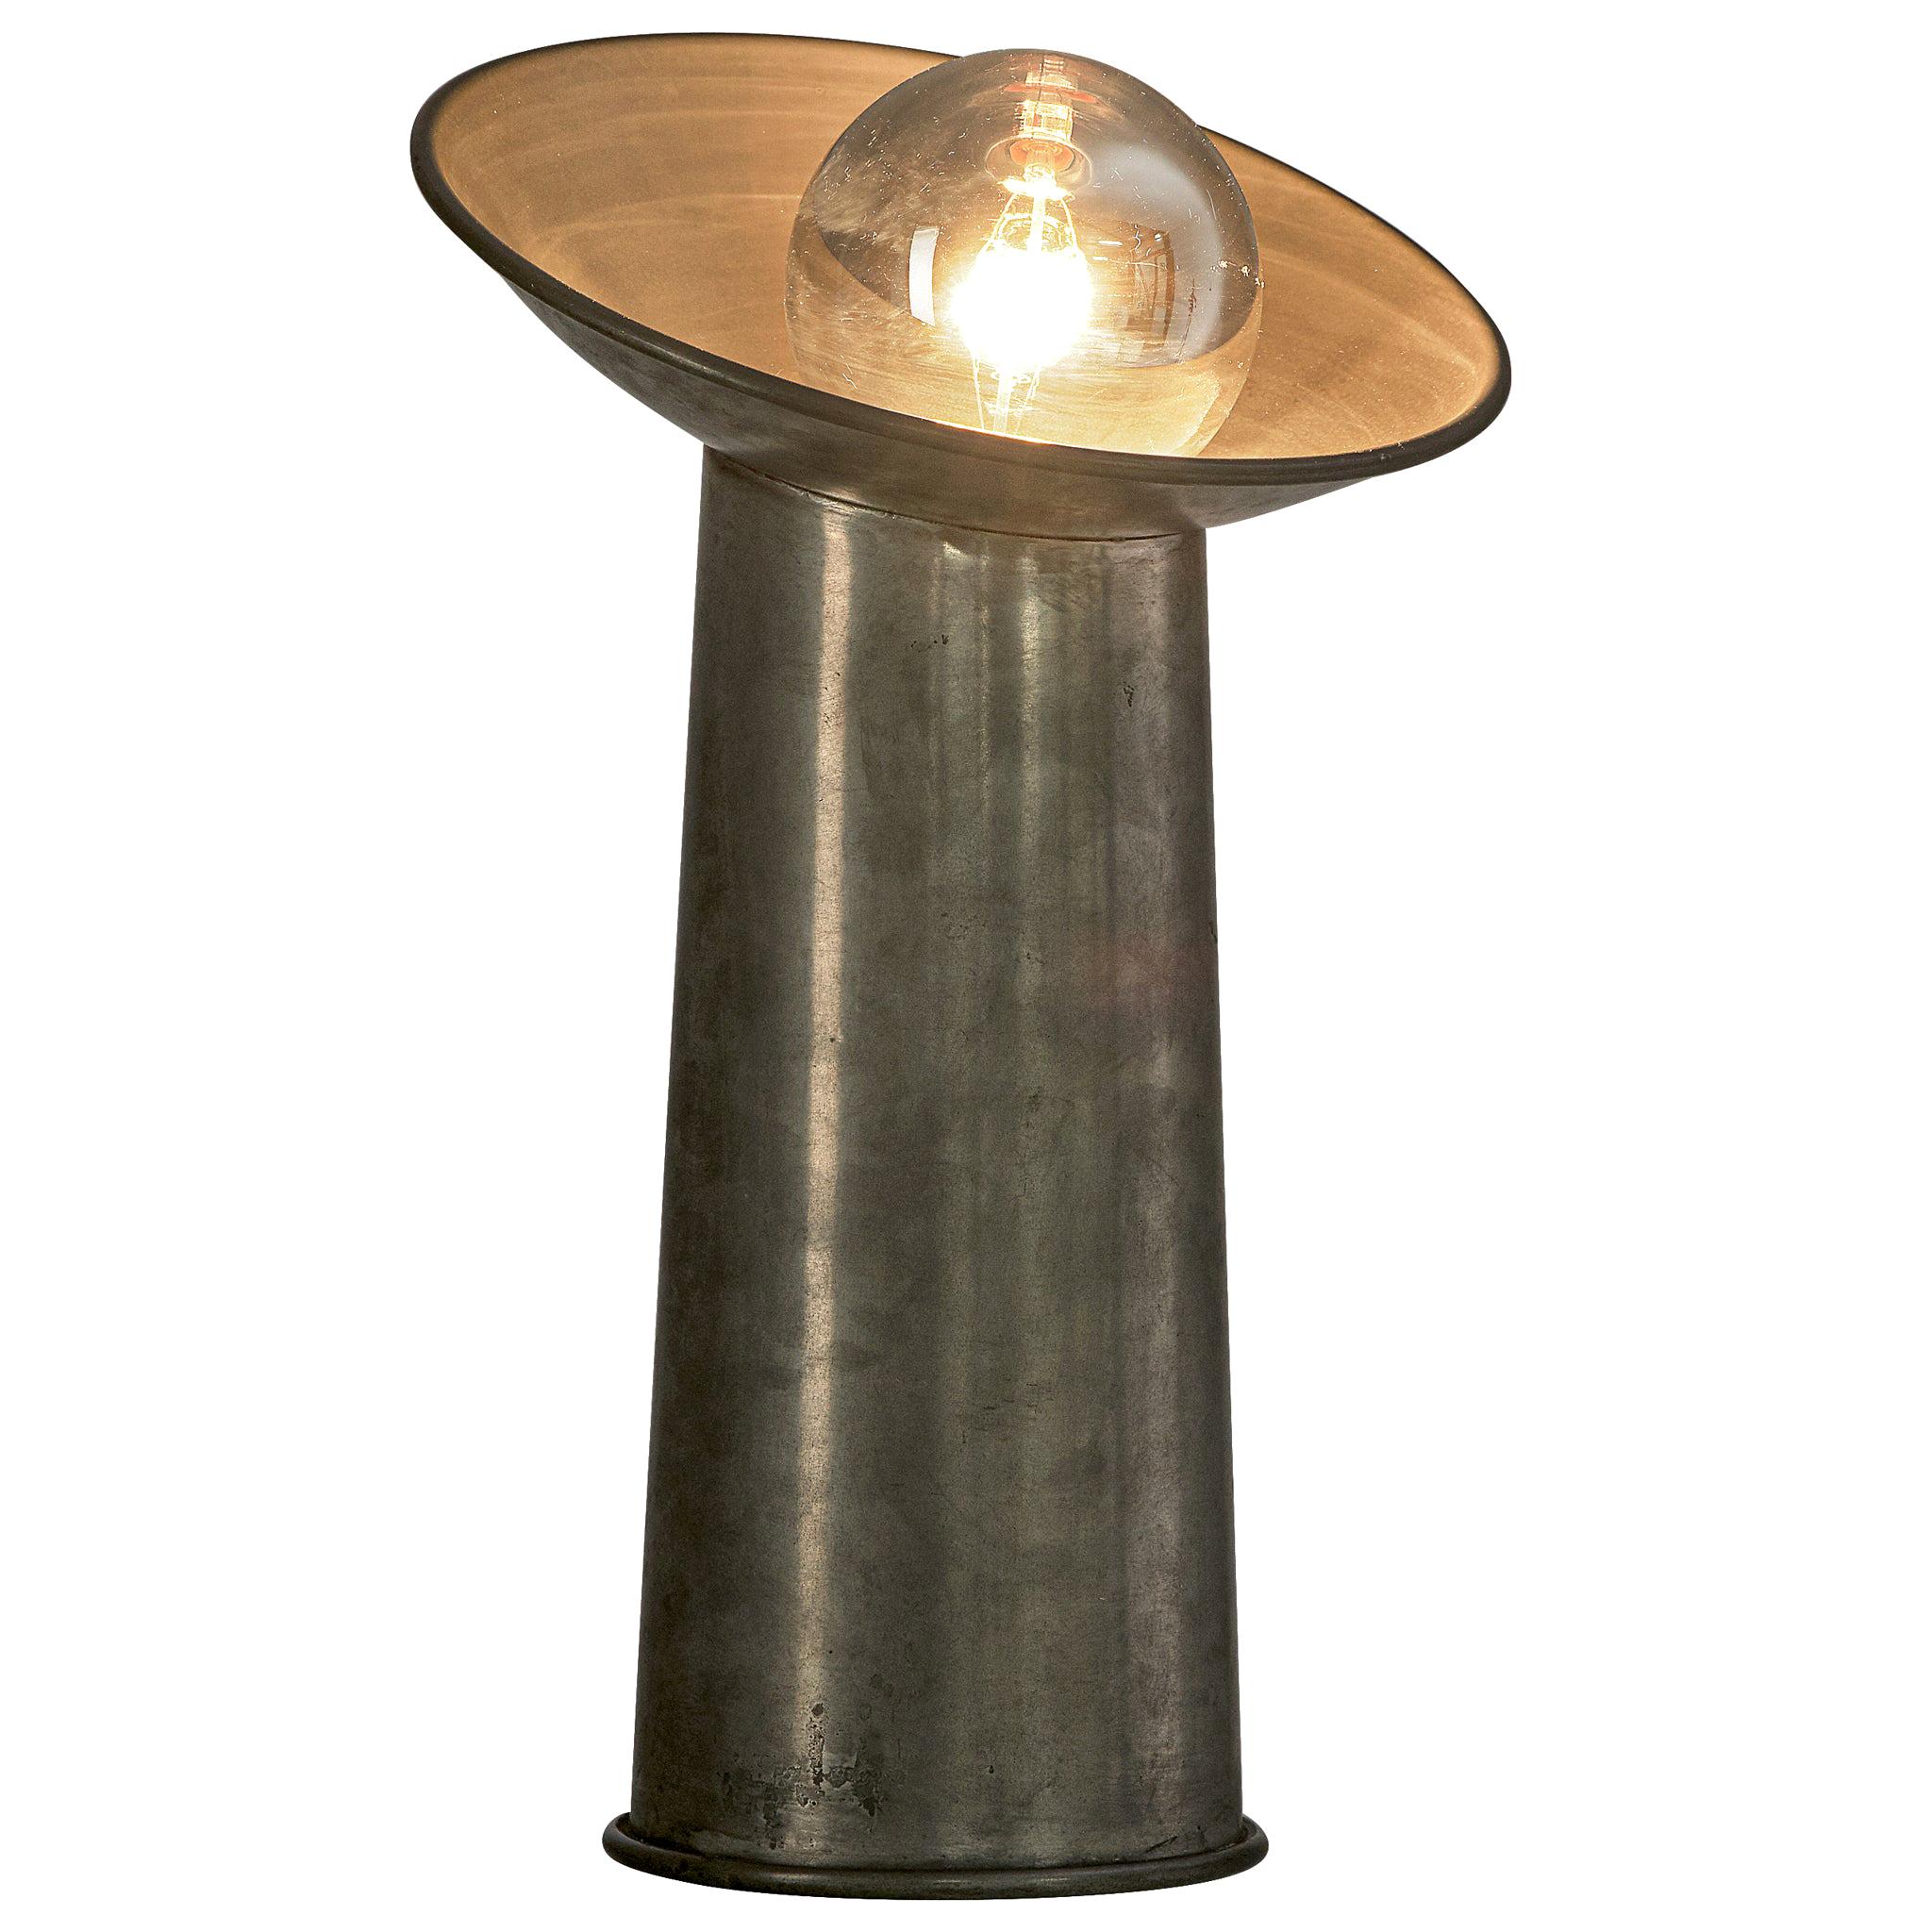 Gjilla Giani for Sormani 'Radar' Table Lamp